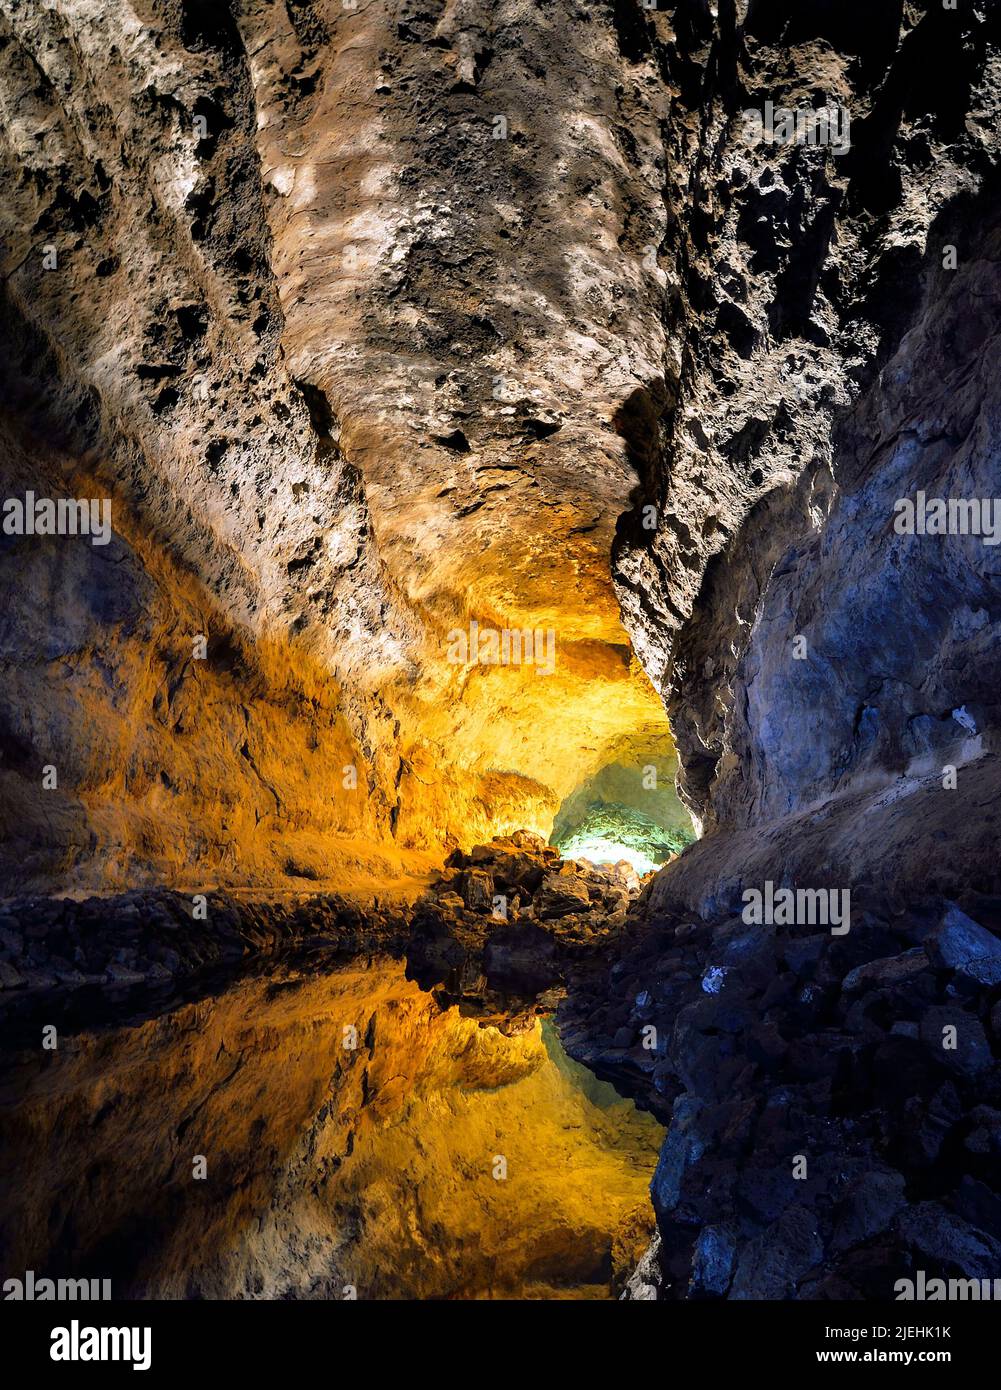 Wasserspiegelung in der Cueva Cuevas de los Verdes, von Cesar Manrique aufwendig illumiertes Höhlensystem eines Lavatunnels, Lanzarote, Kanarische Ins Stockfoto